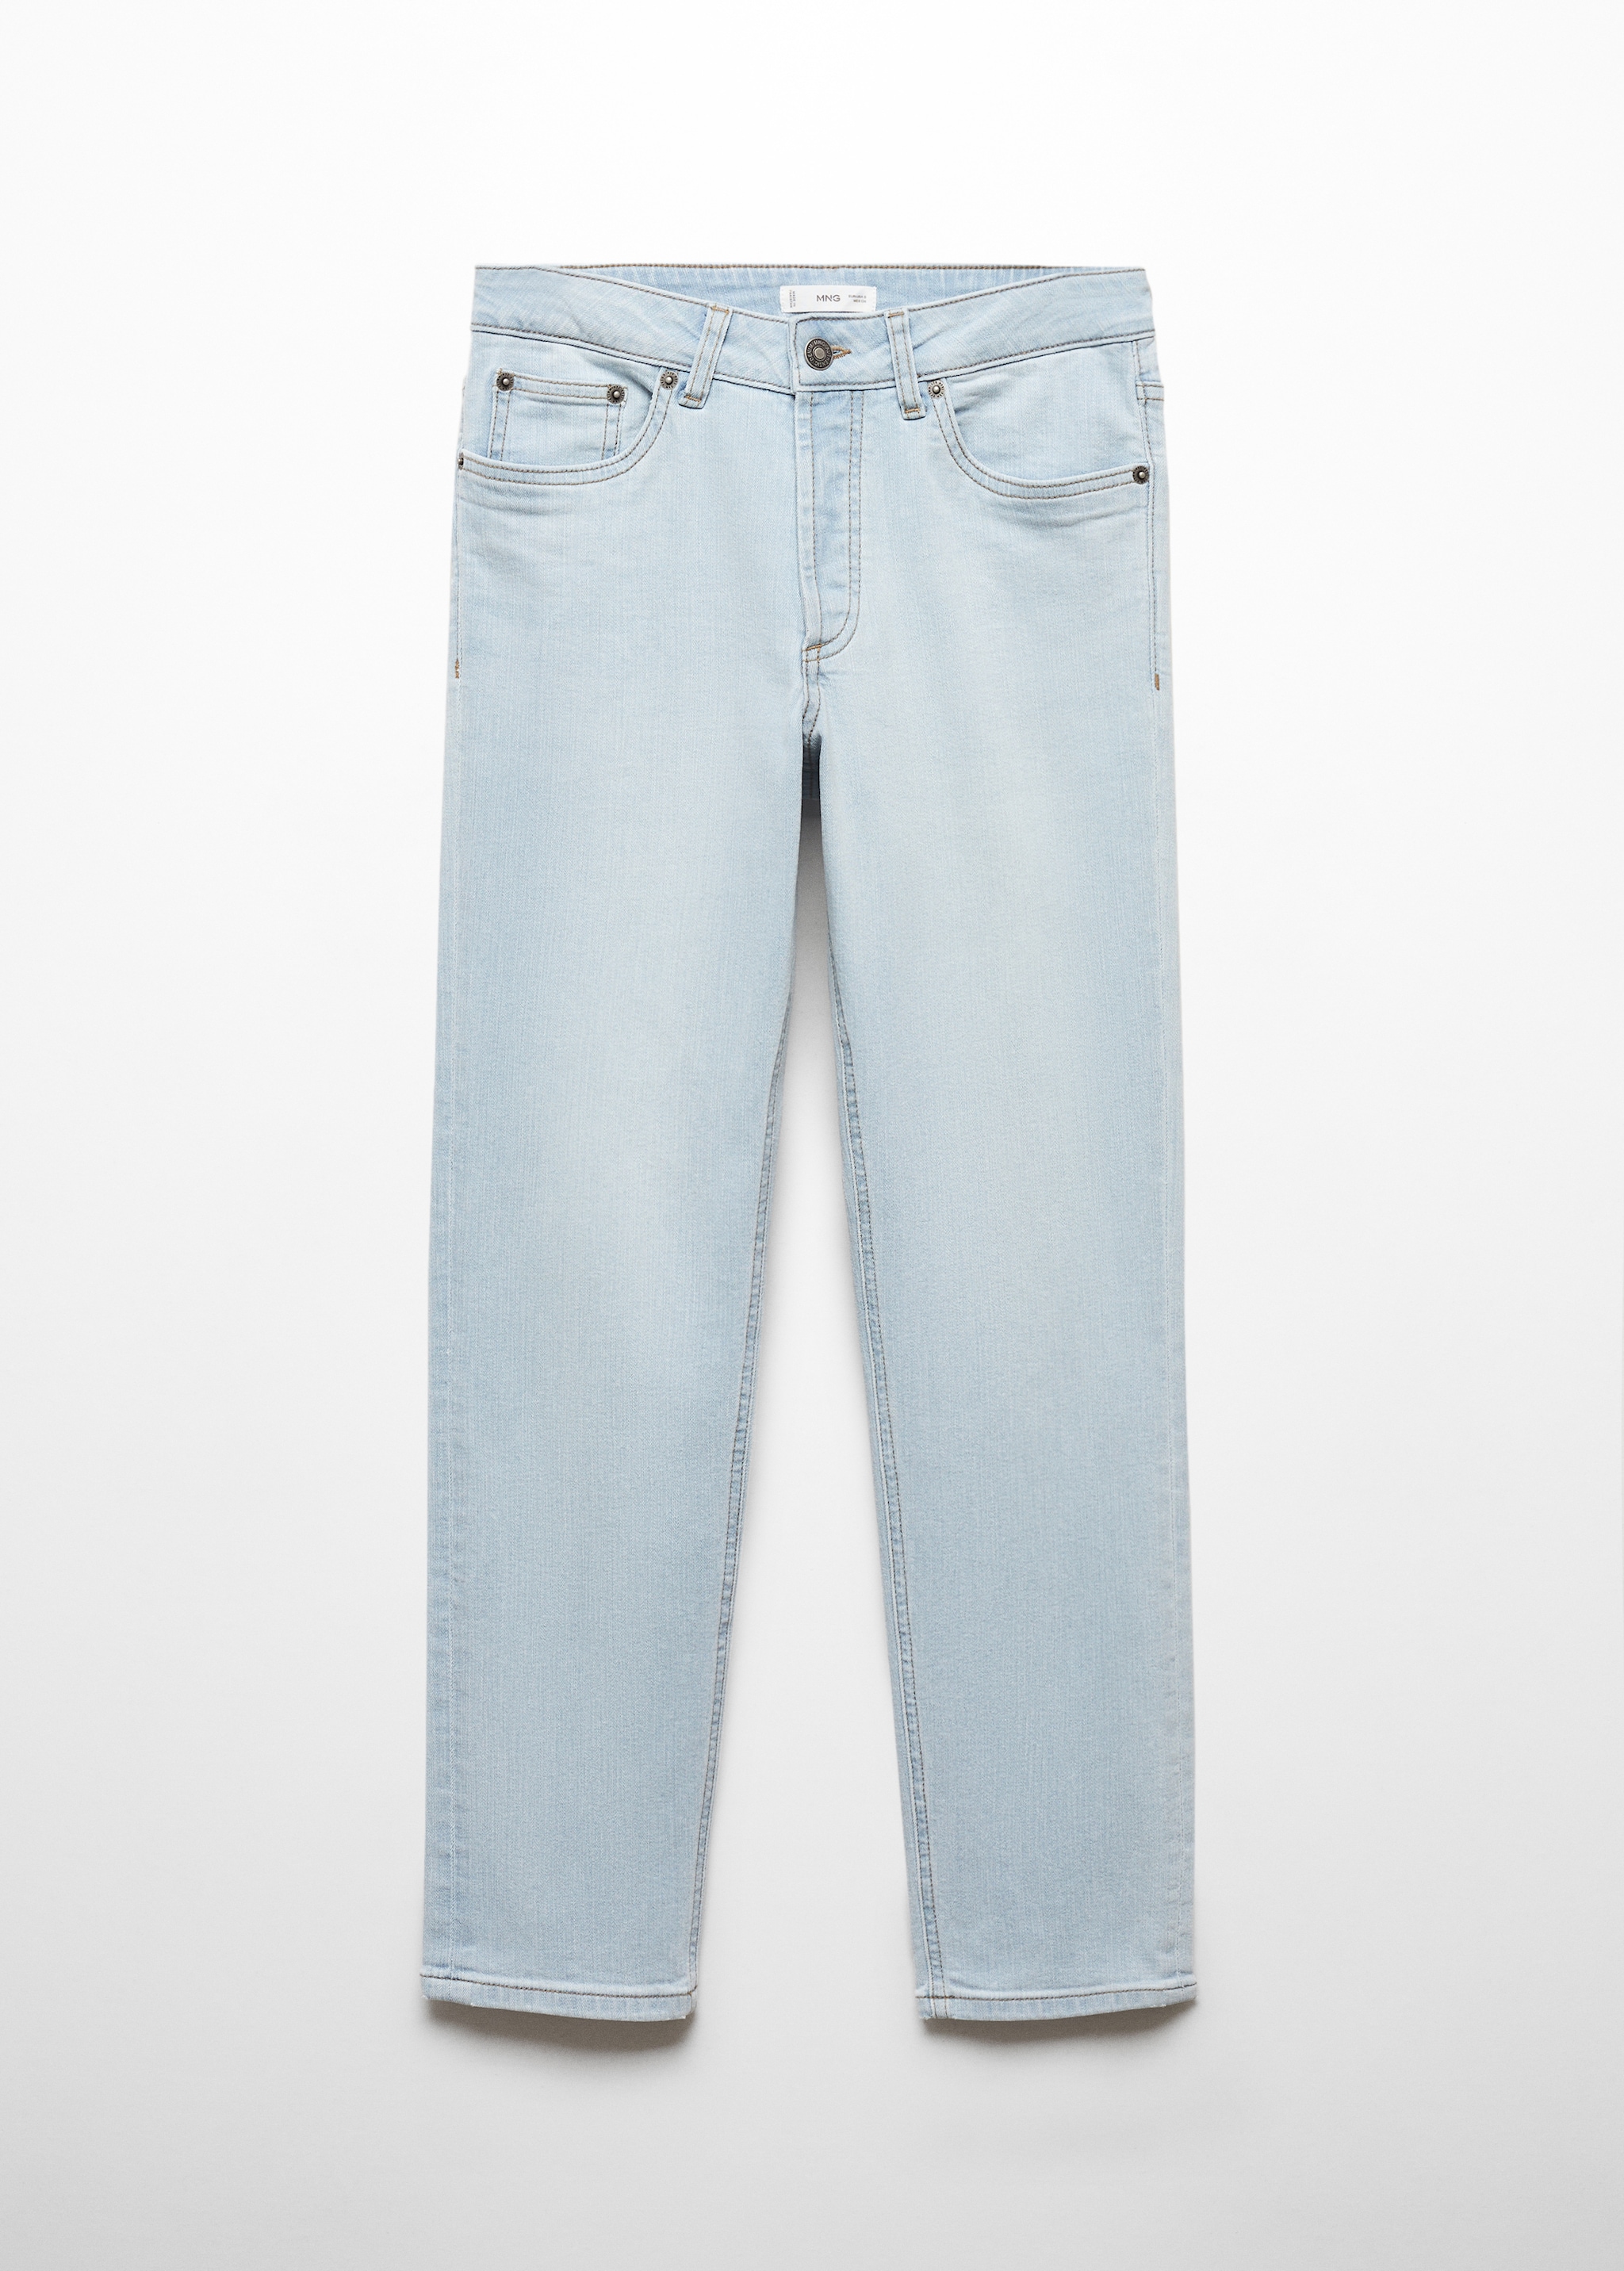 Jeans slim botones - Artículo sin modelo